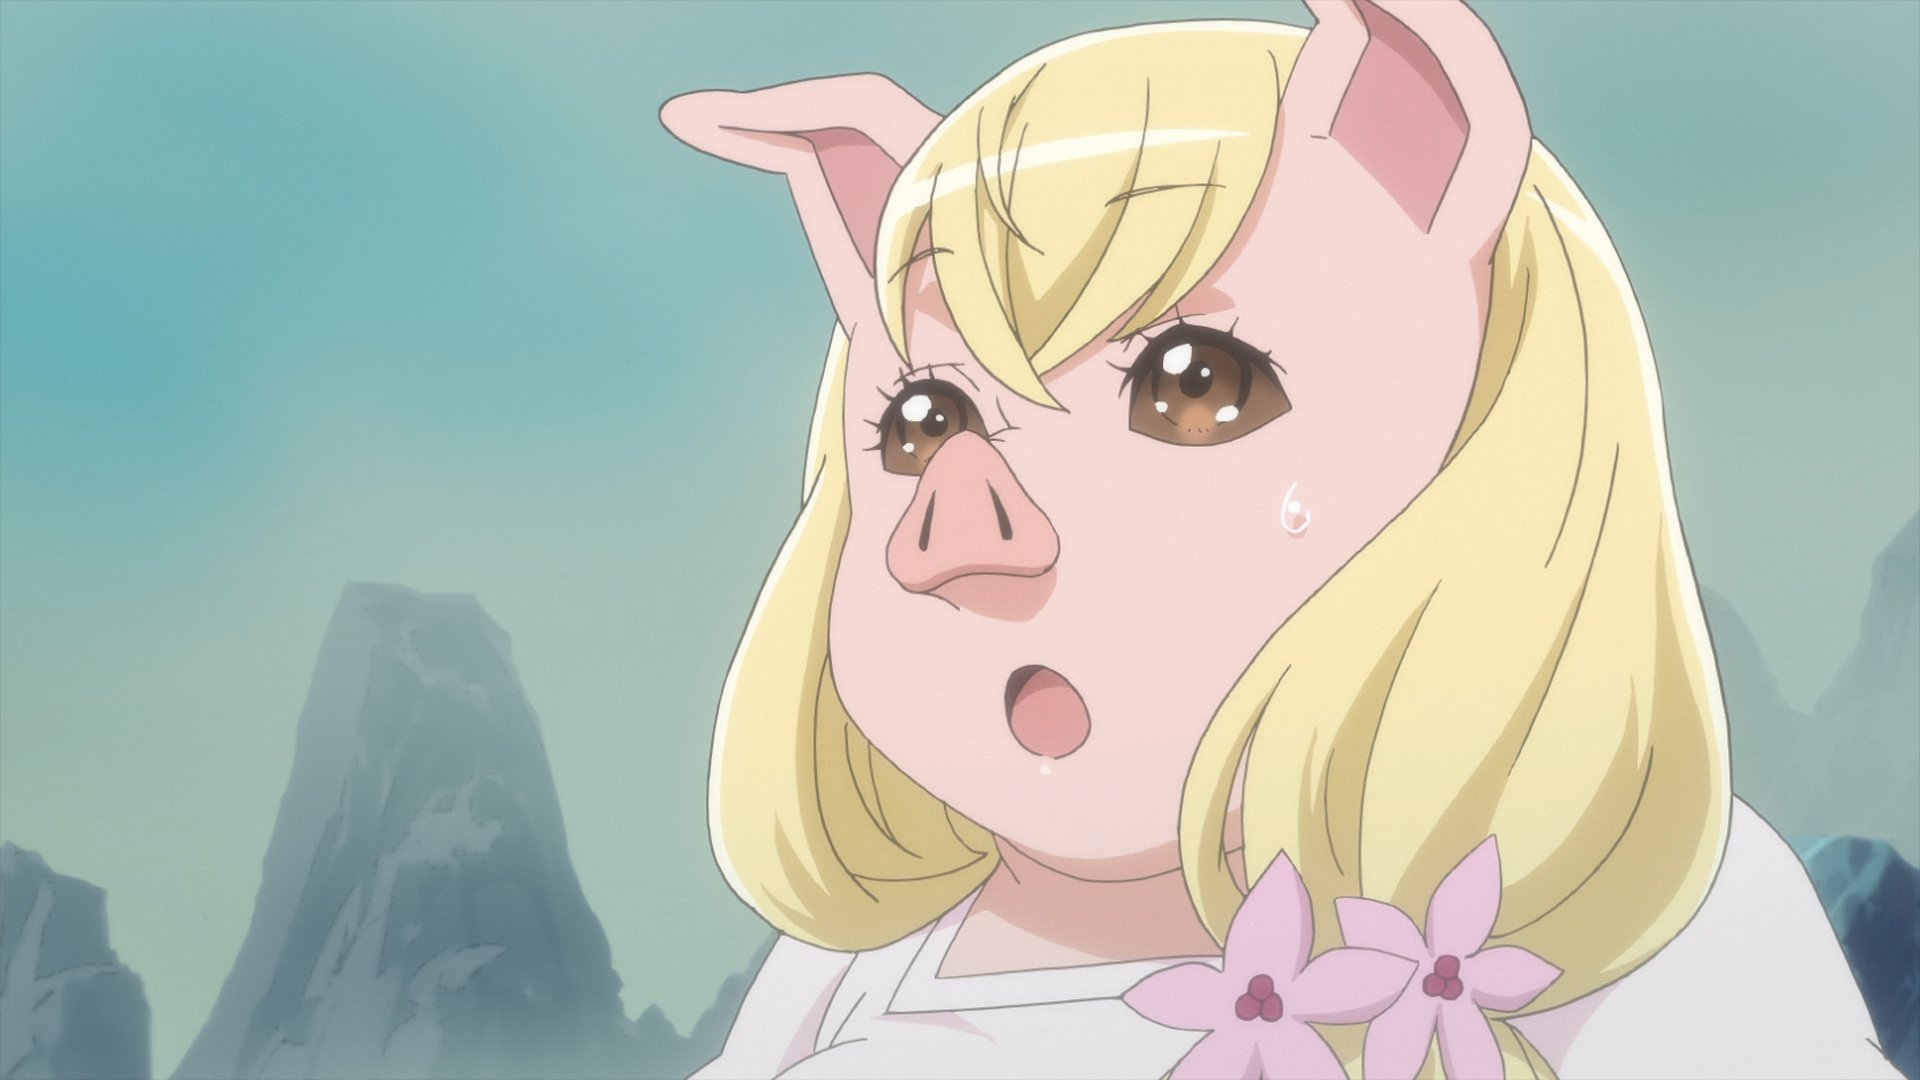 Emma schaut mit Besorgnis in eine Szene aus dem Tsukimichi -Moonlit Fantasy- TV-Anime.